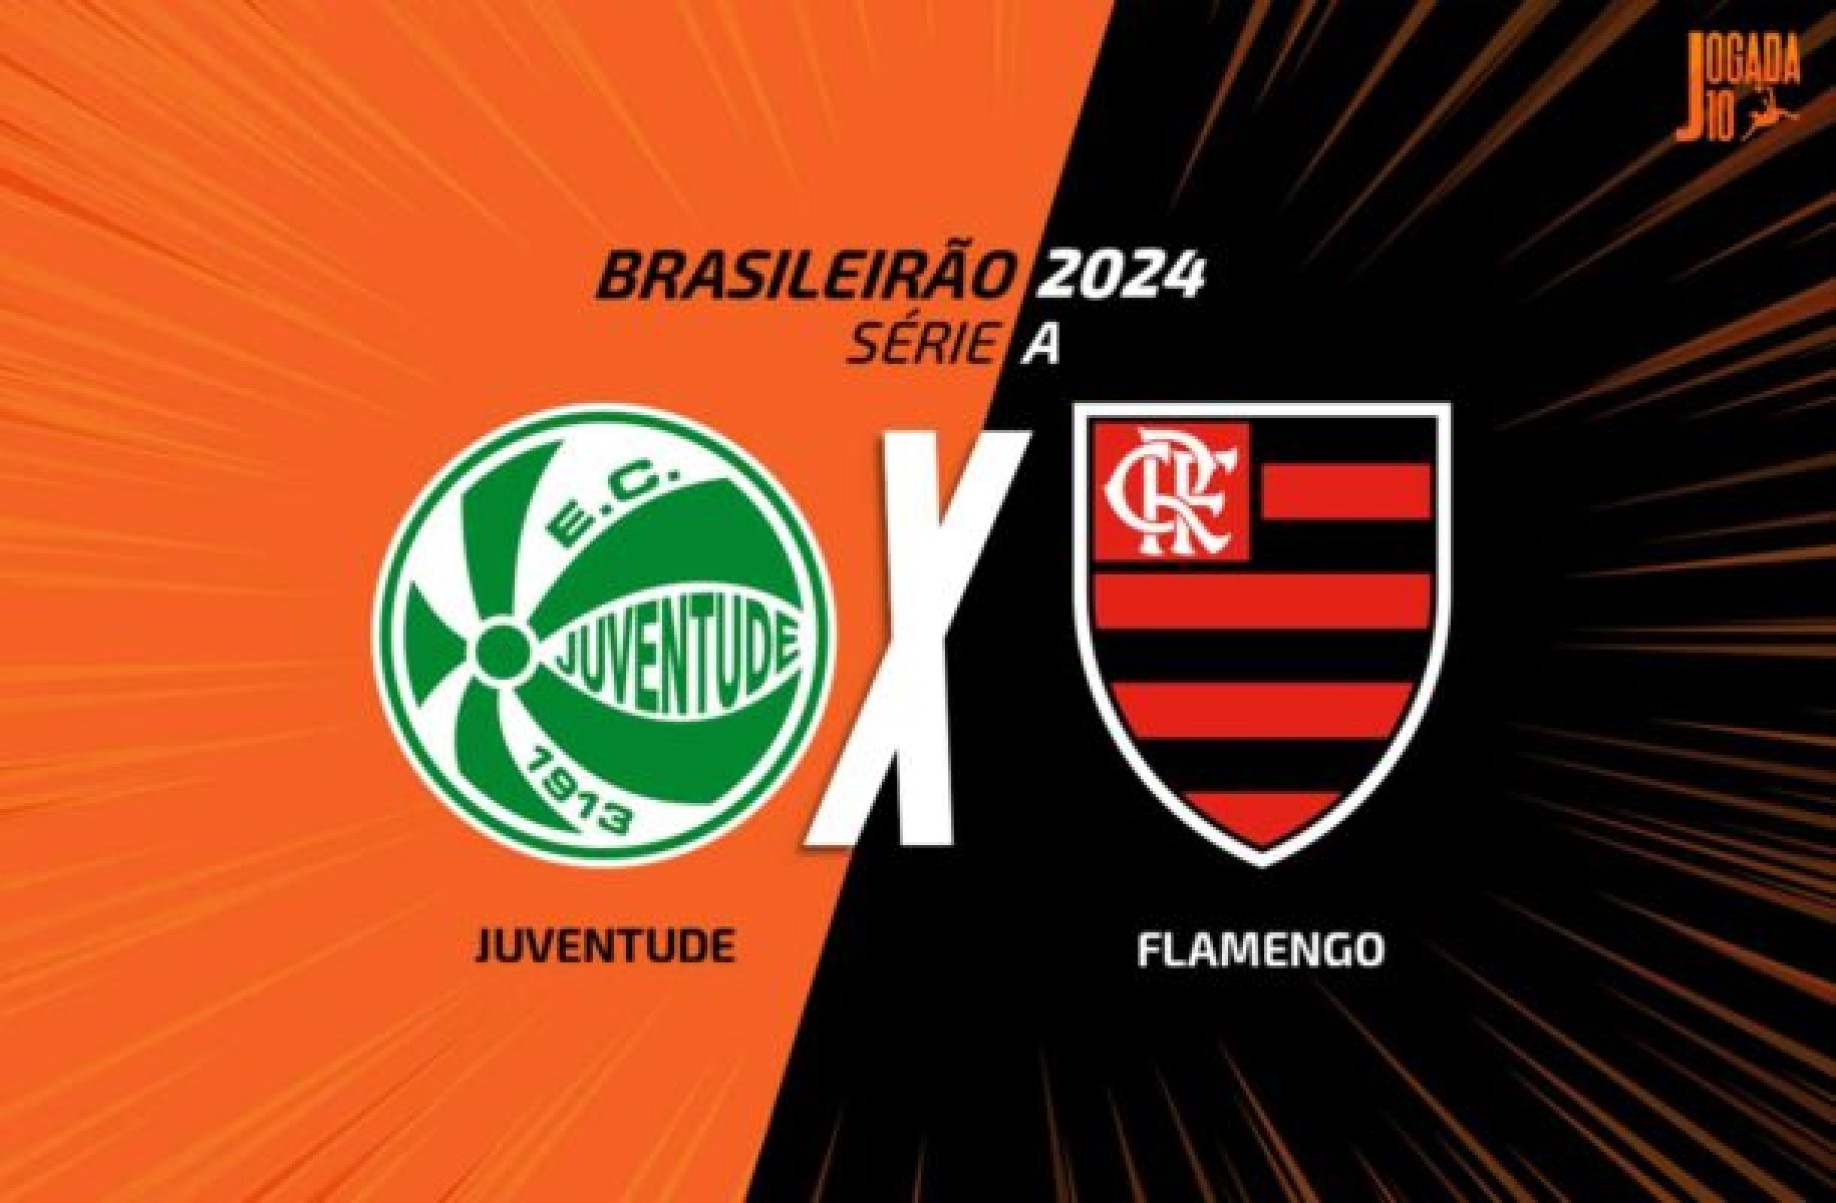 Juventude x Flamengo, AO VIVO, com a Voz do Esporte, às 18h30